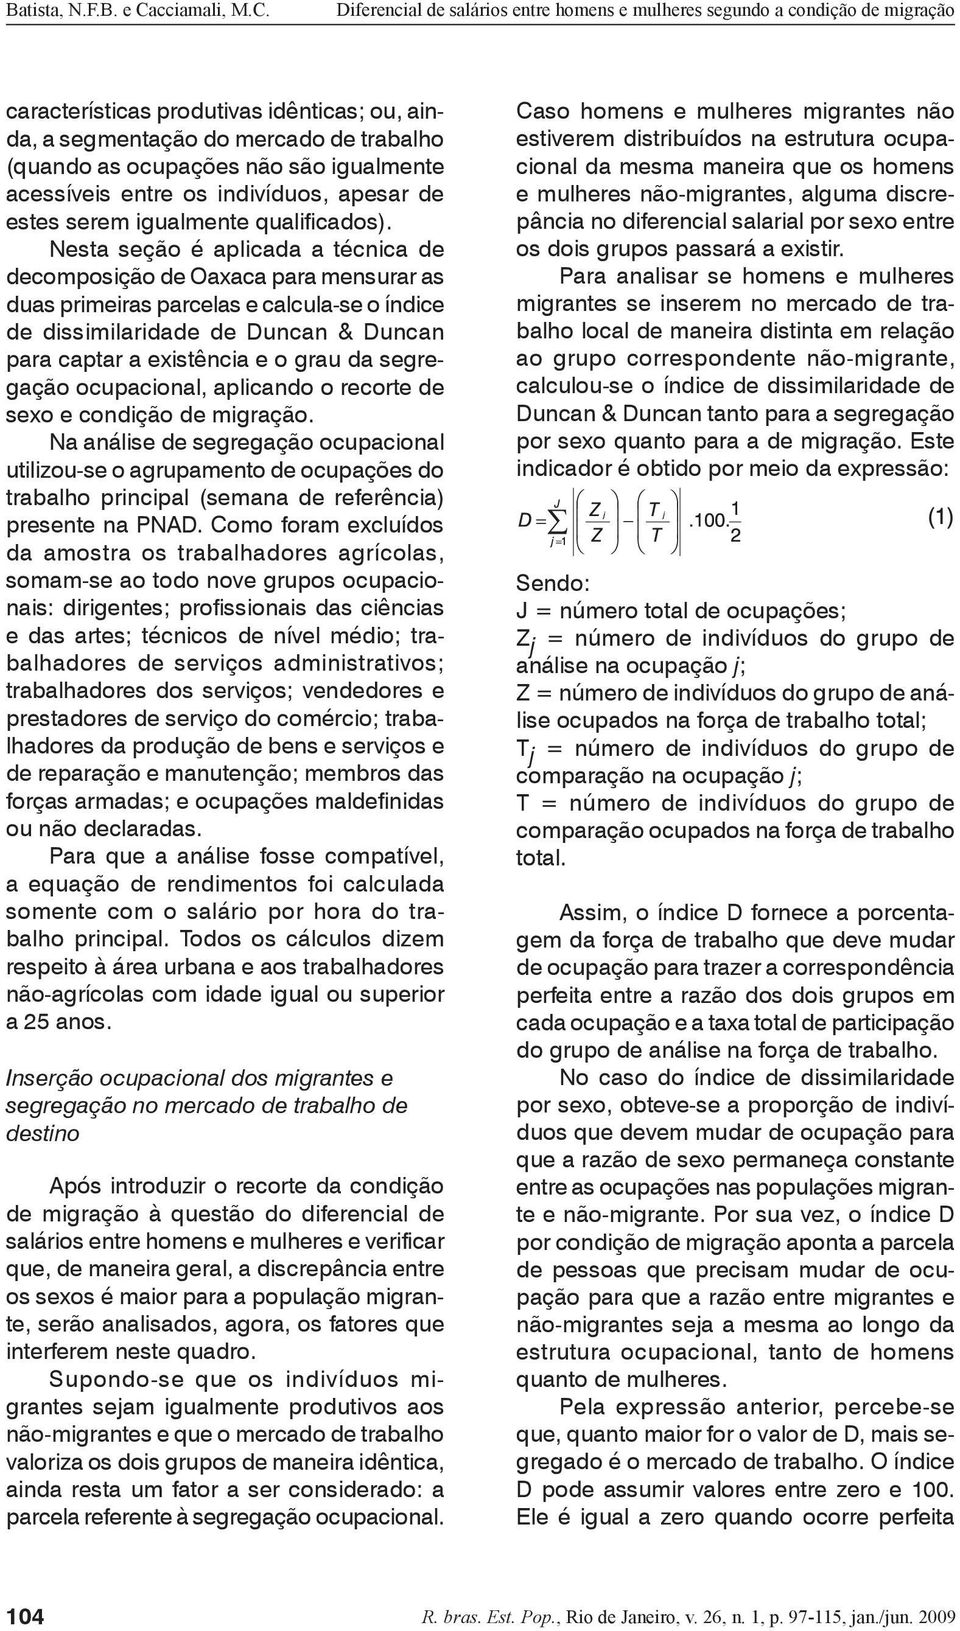 Nesta seção é aplicada a técnica de decomposição de Oaxaca para mensurar as duas primeiras parcelas e calcula-se o índice de dissimilaridade de Duncan & Duncan para captar a existência e o grau da